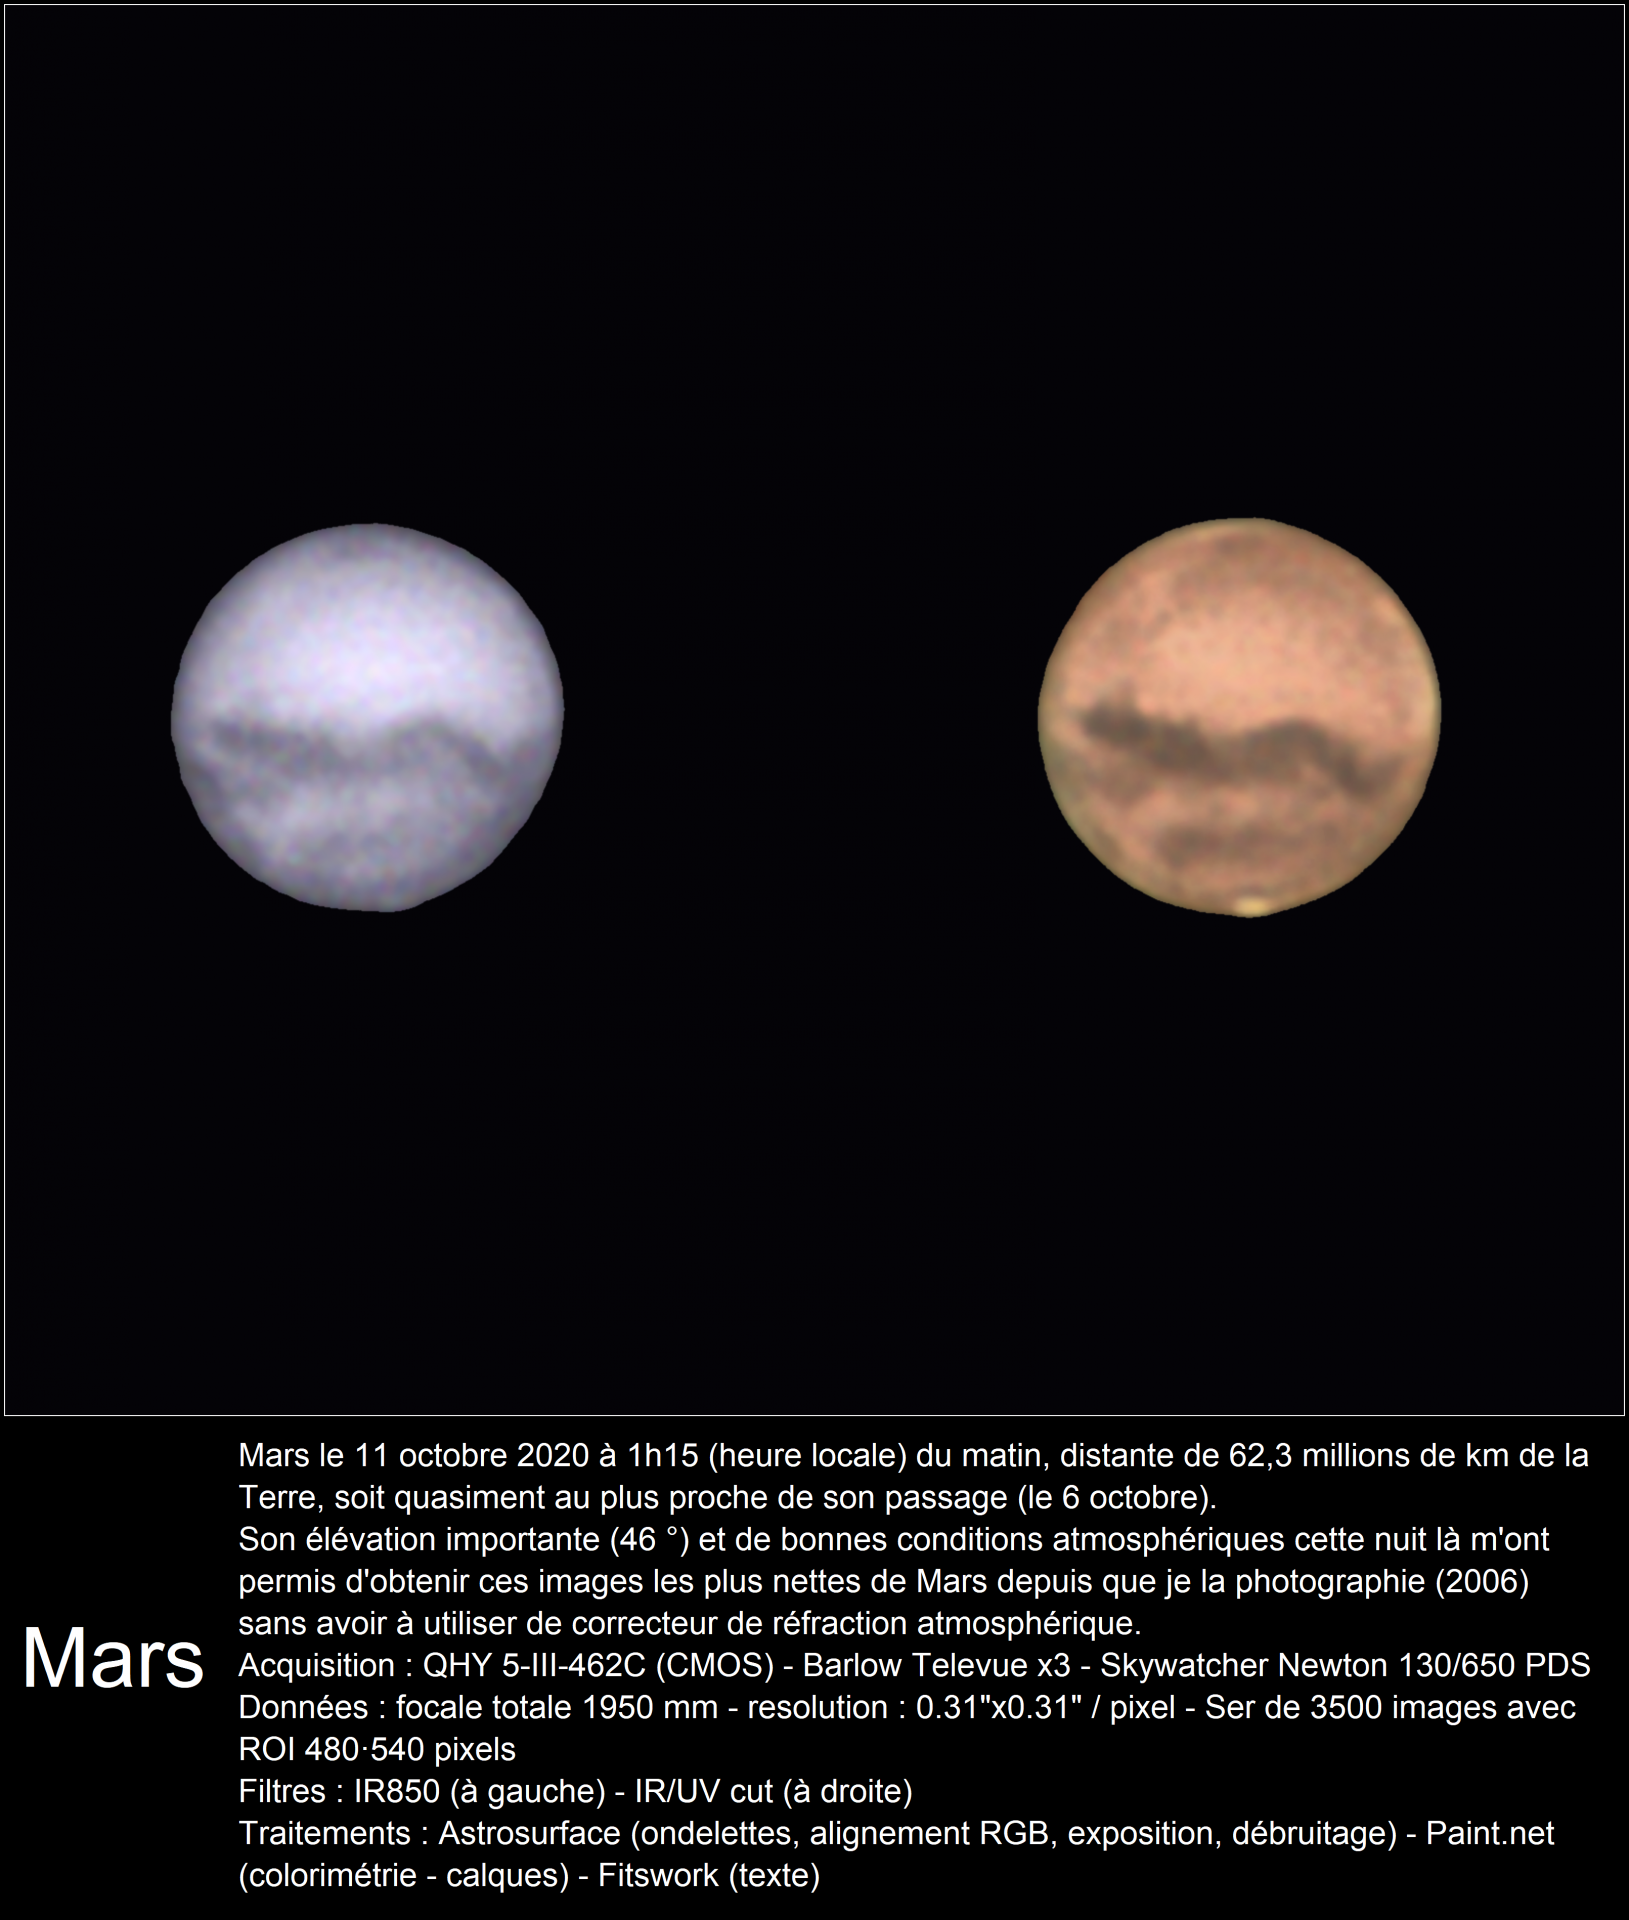 Mars 11 octobre 2020 (near opposition)